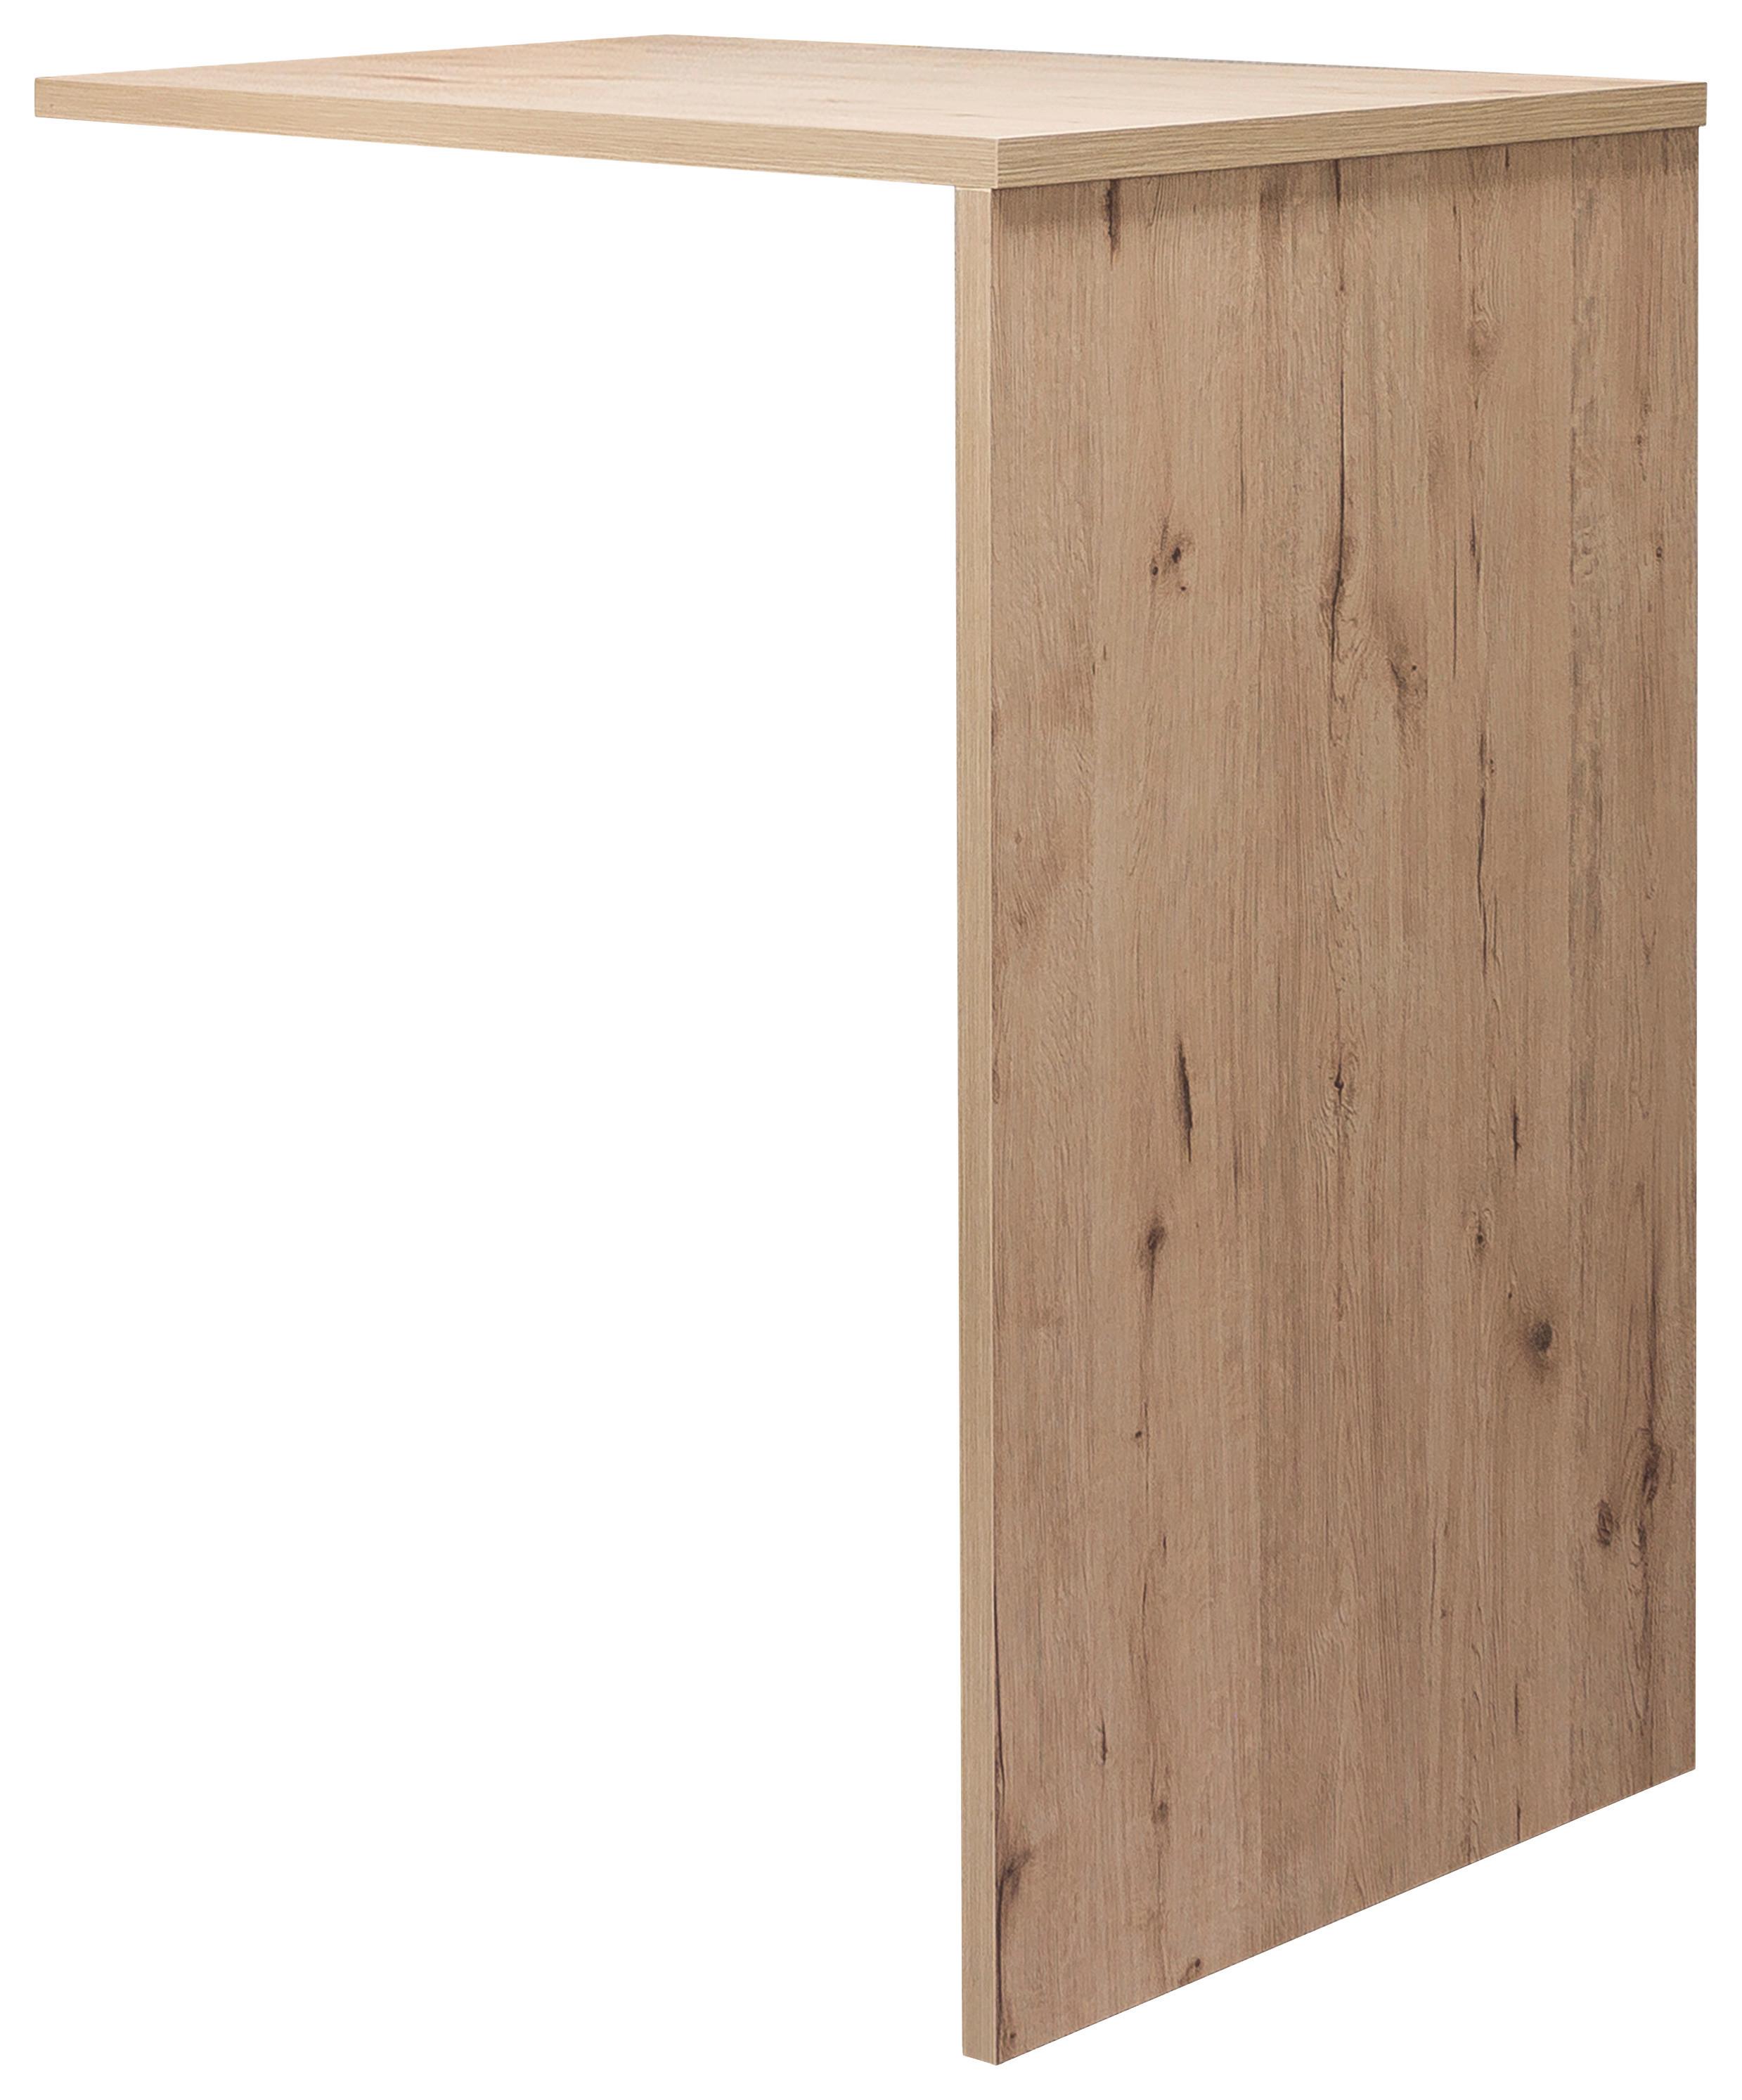 Barový Stůl Milano - barvy dubu (103/106/60cm)